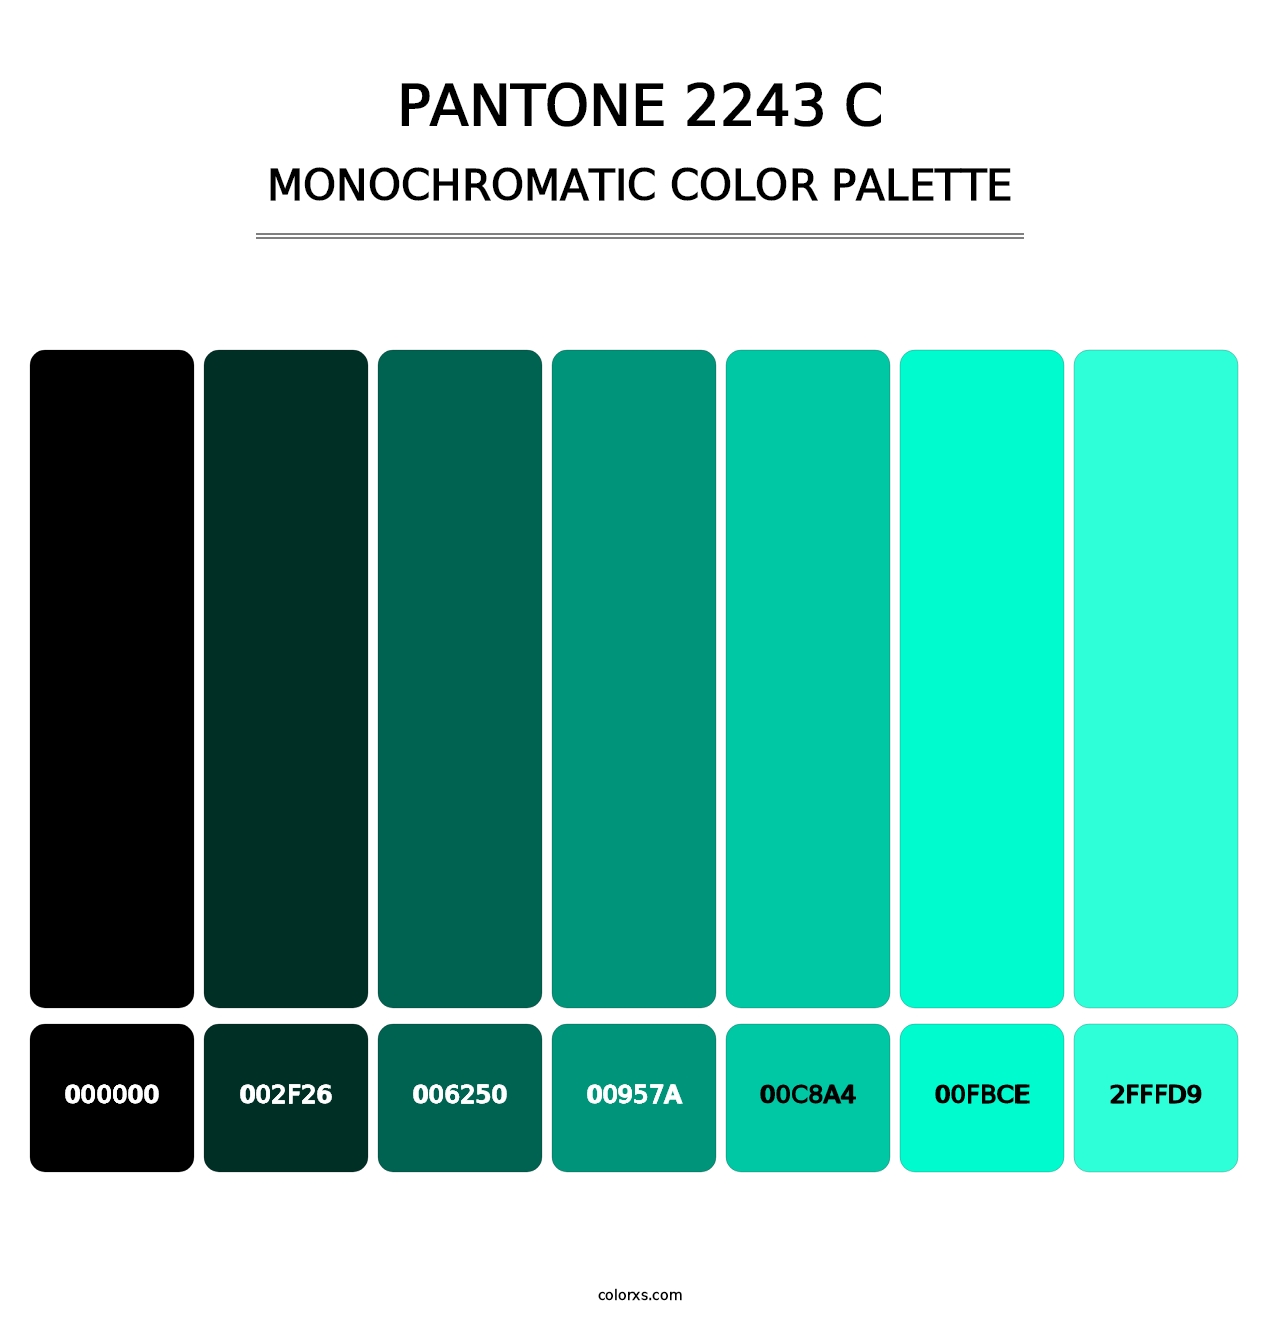 PANTONE 2243 C - Monochromatic Color Palette